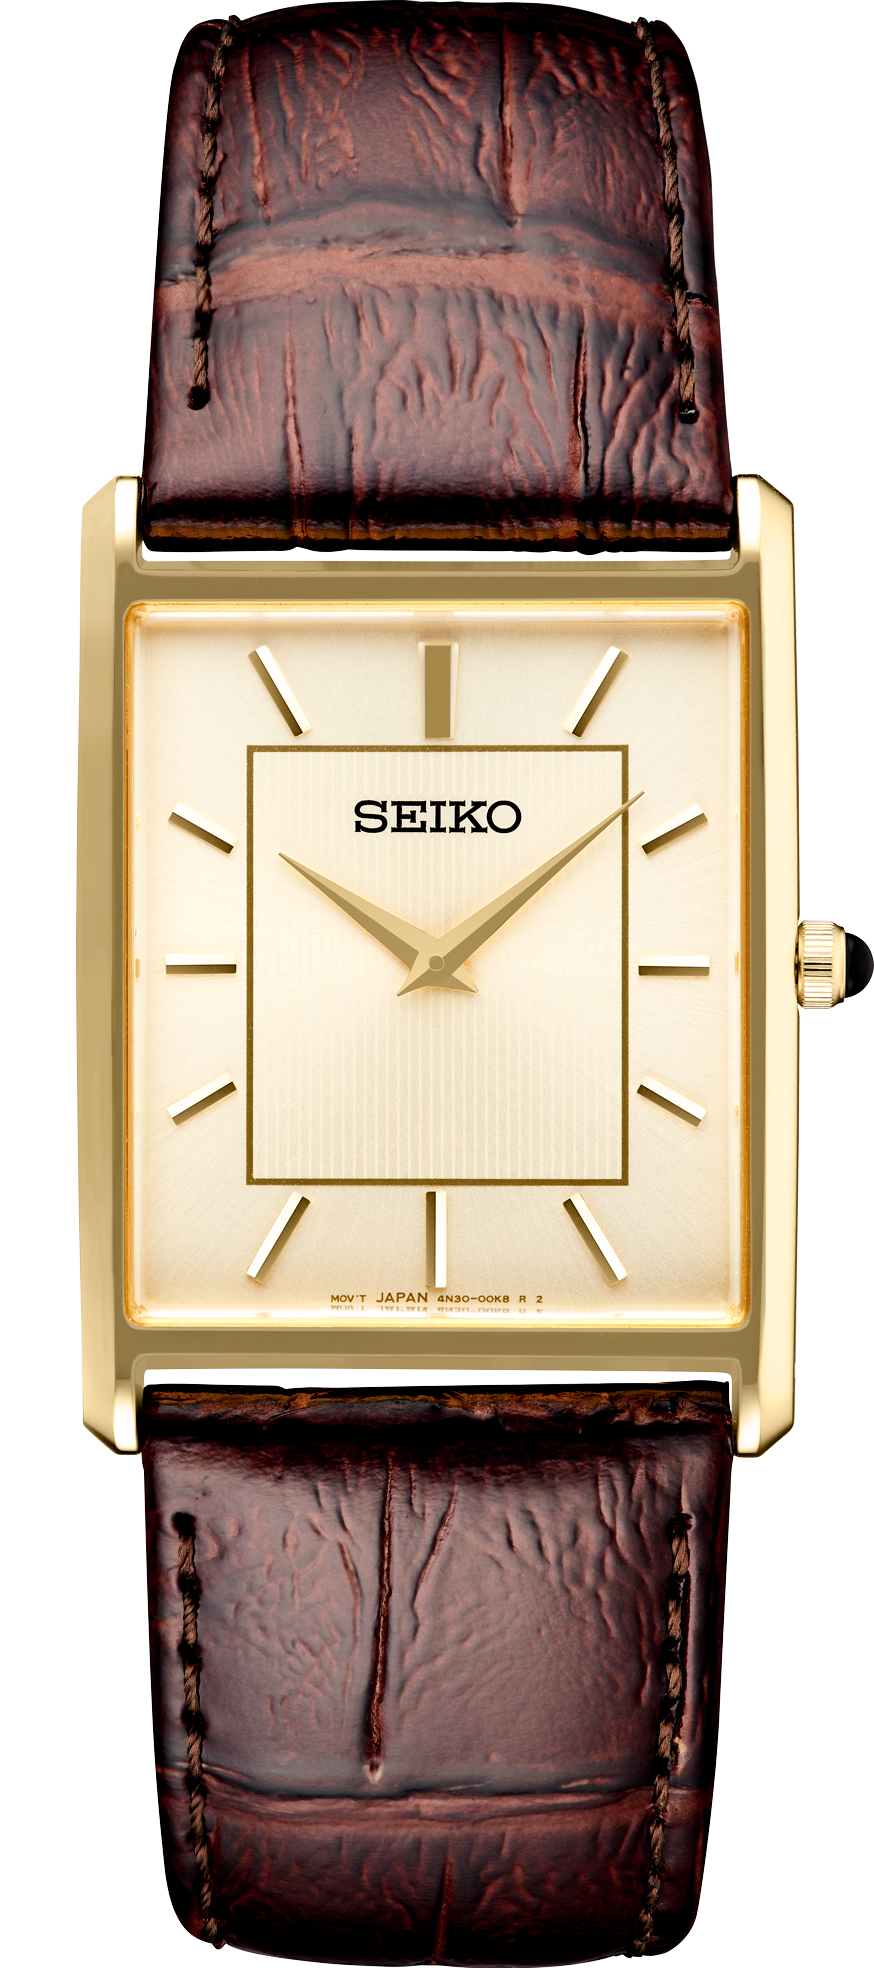 SWR064 – Seiko USA